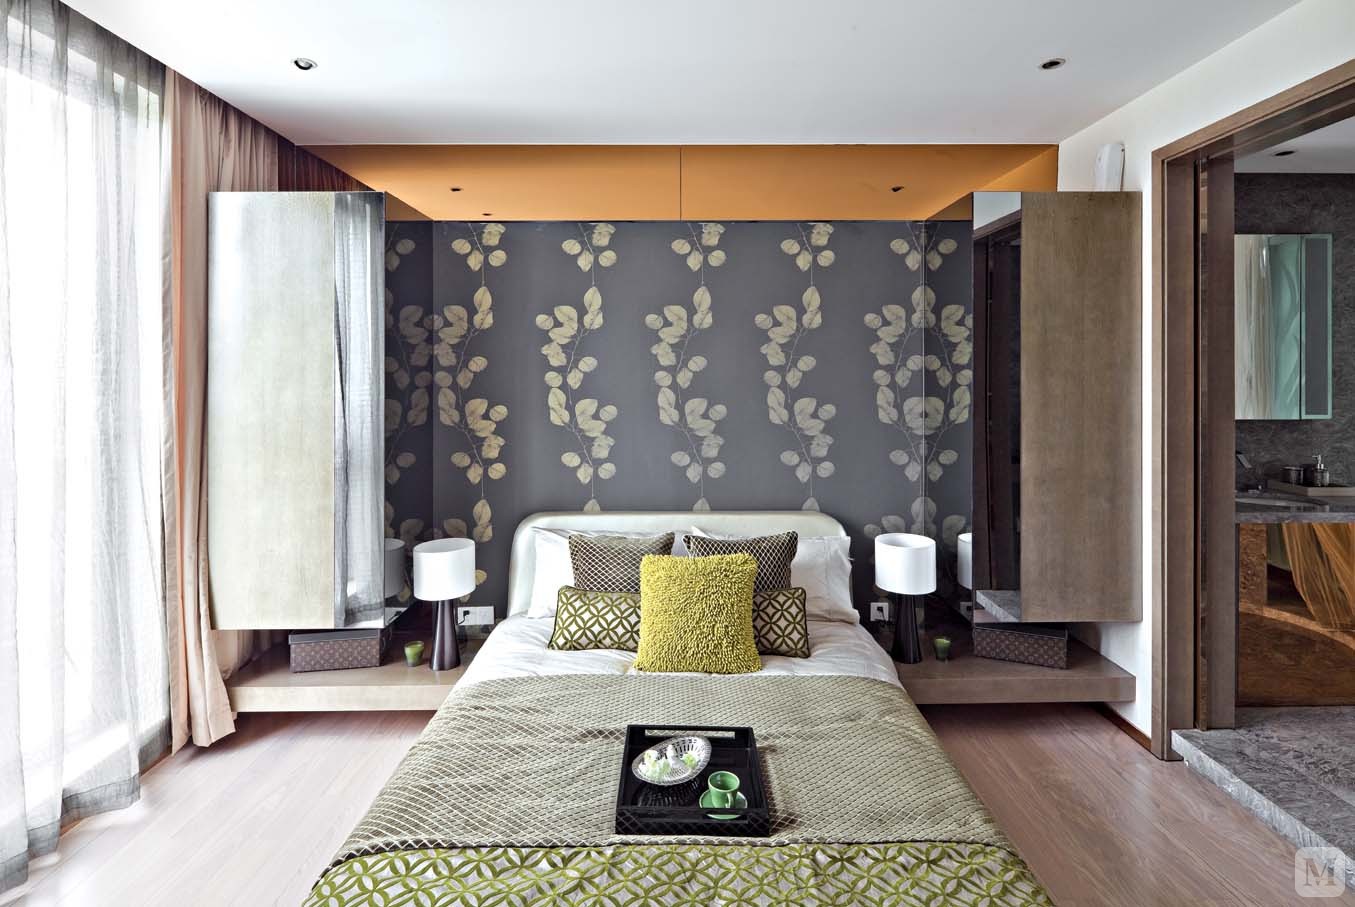 客厅用明快的材质和颜色相结合  打造一个极具现代感而不失奢华的品味空间。时尚与古典元素完美的结合。卧室在运用咖啡色软包，则更强调沉稳和柔和，透露一种华美的气质。